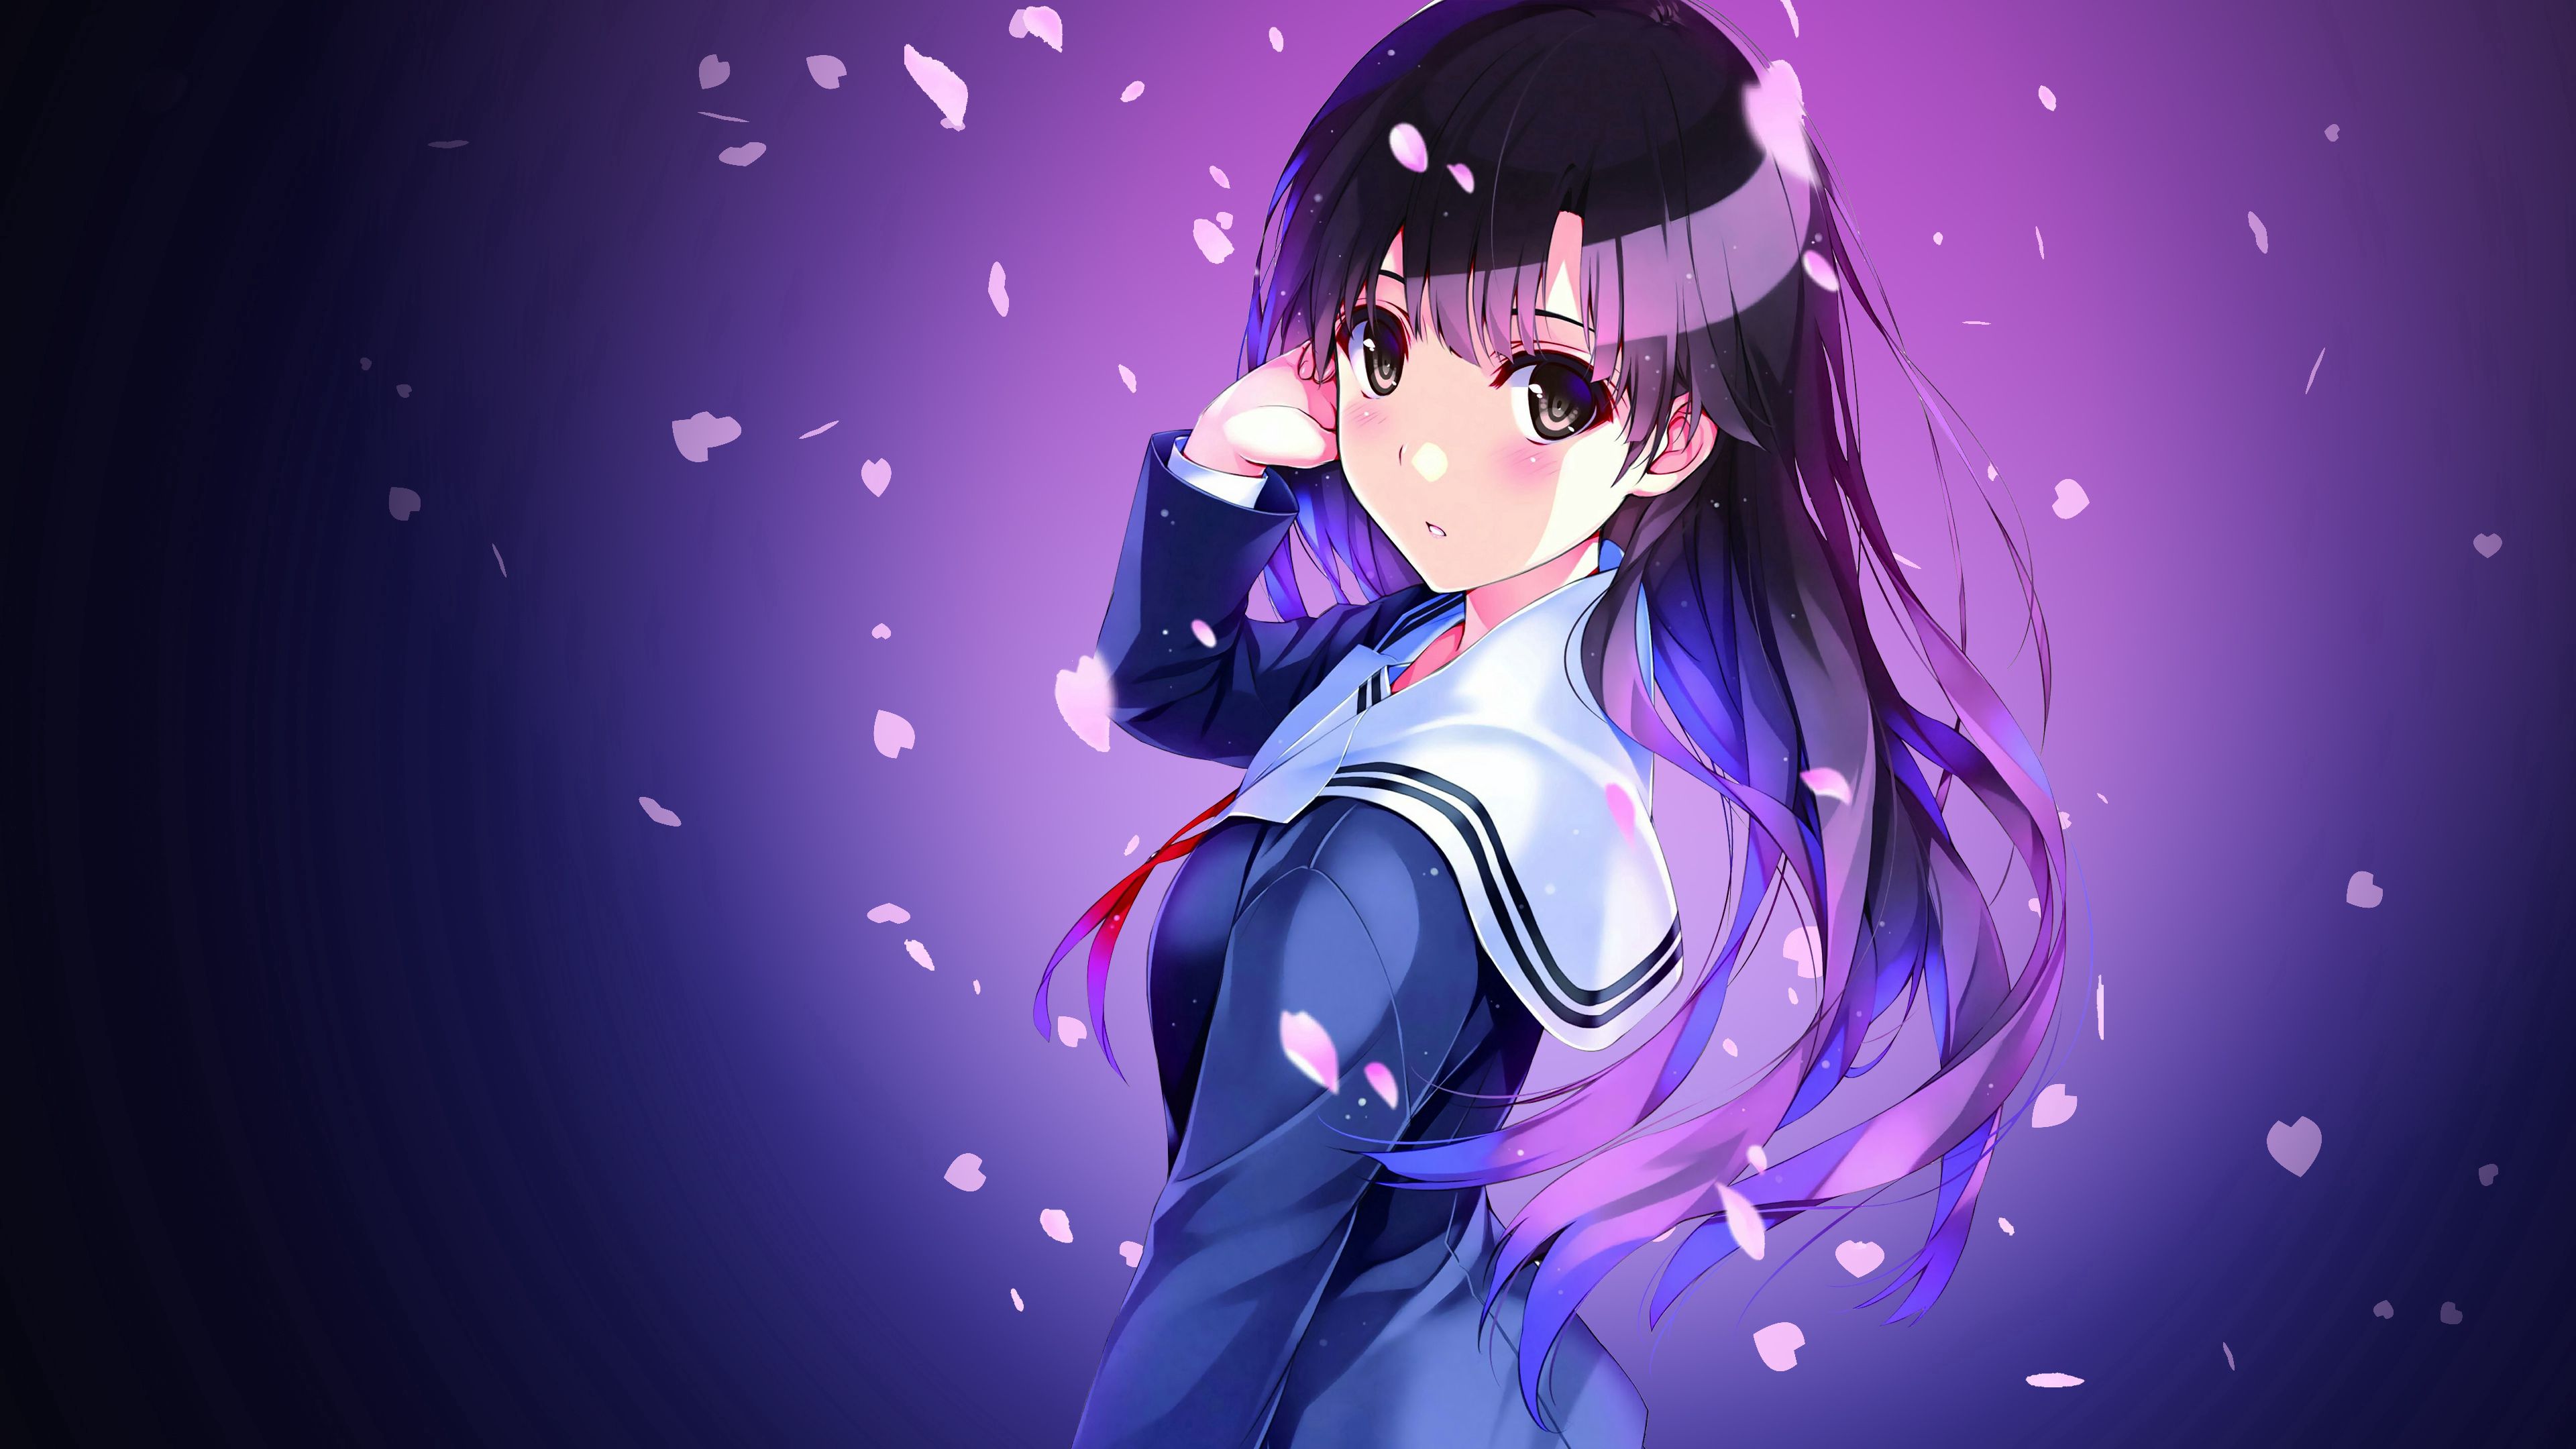 Download Wallpaper 3840x2160 Anime Schoolgirl Uniform Girl Hd Background